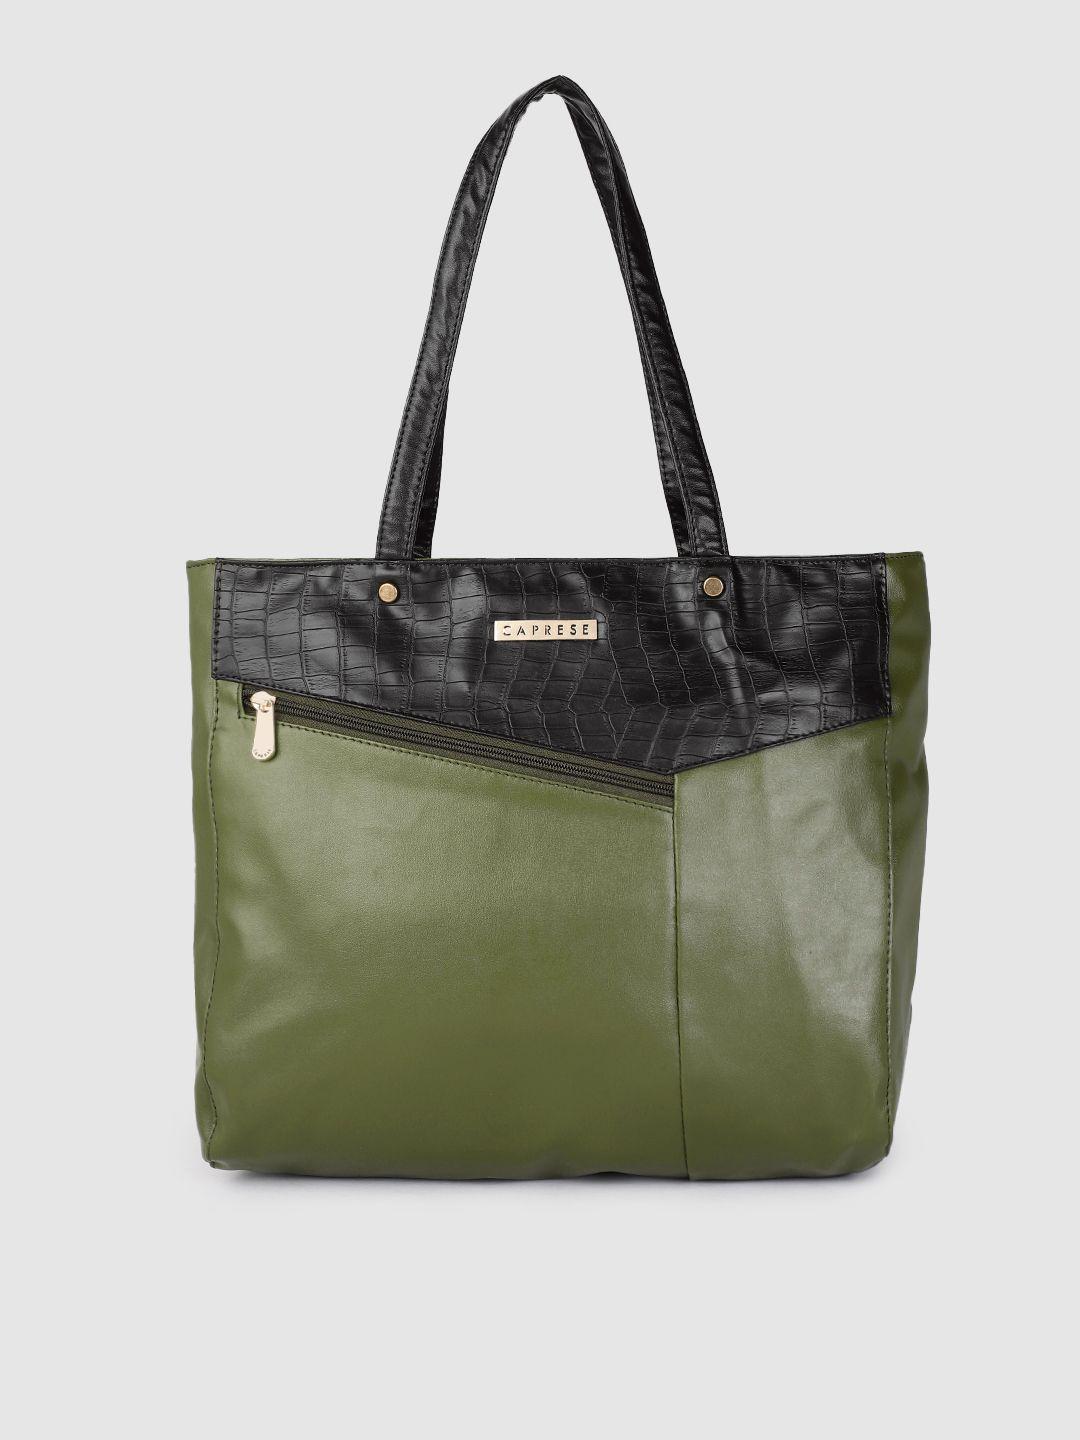 caprese olive green textured structured shoulder bag